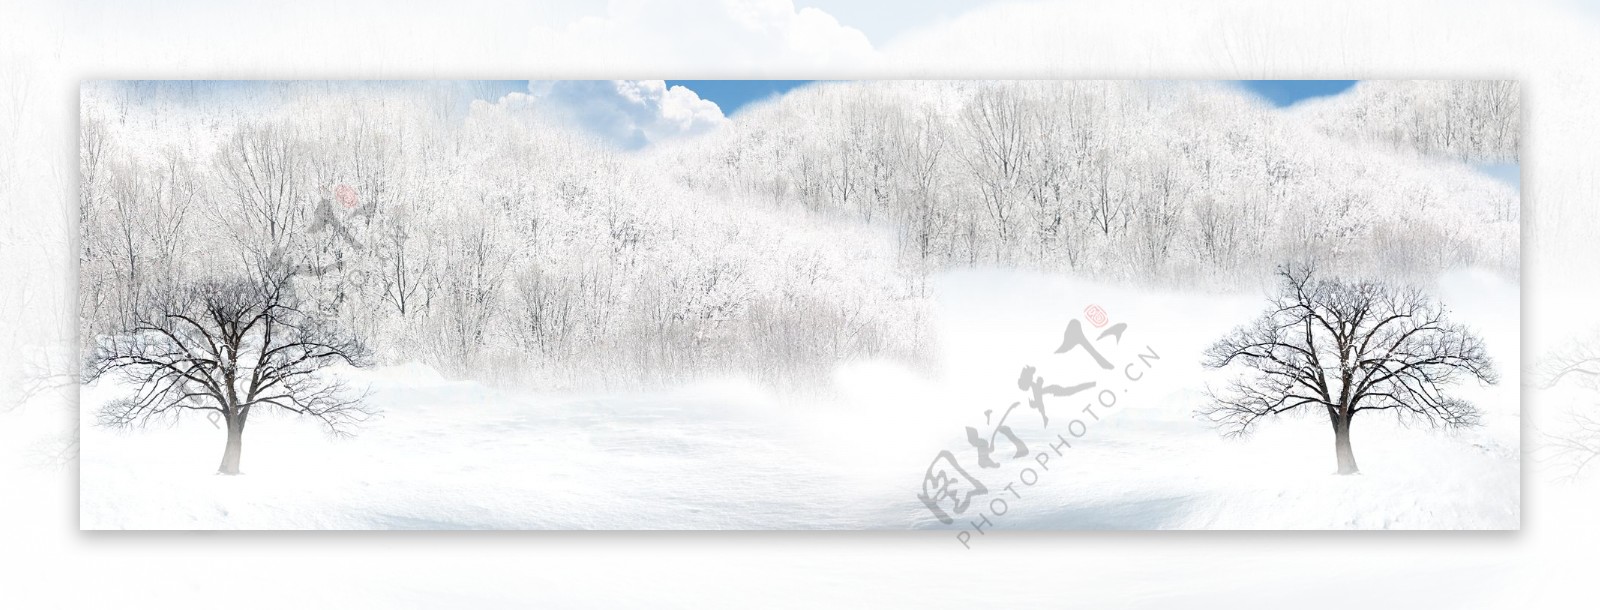 雪树1920雪景背景素材119